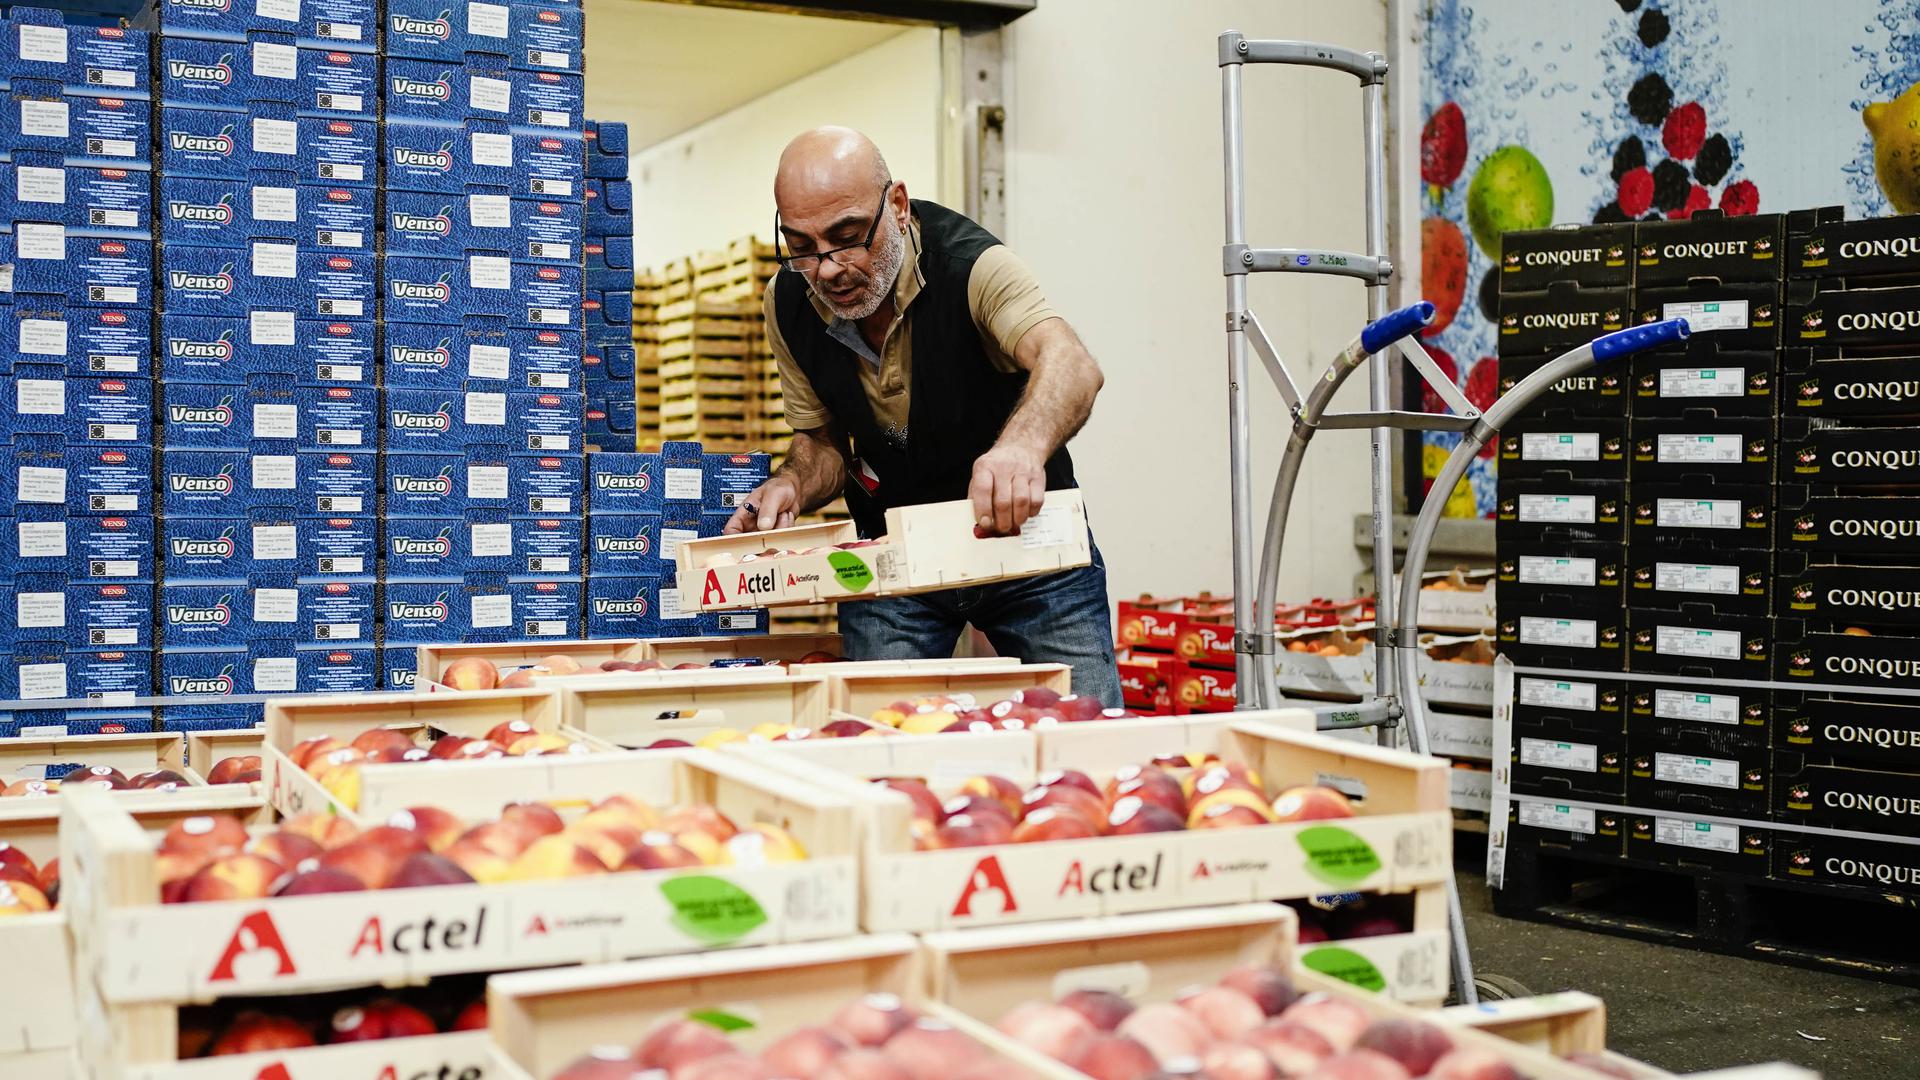 Hasmet Aysu, Mitarbeiter der Rolf Koch GmbH, stapelt im Verkaufsstand des Großmarkts Karlsruhe Obstkisten auf eine Sackkarre.